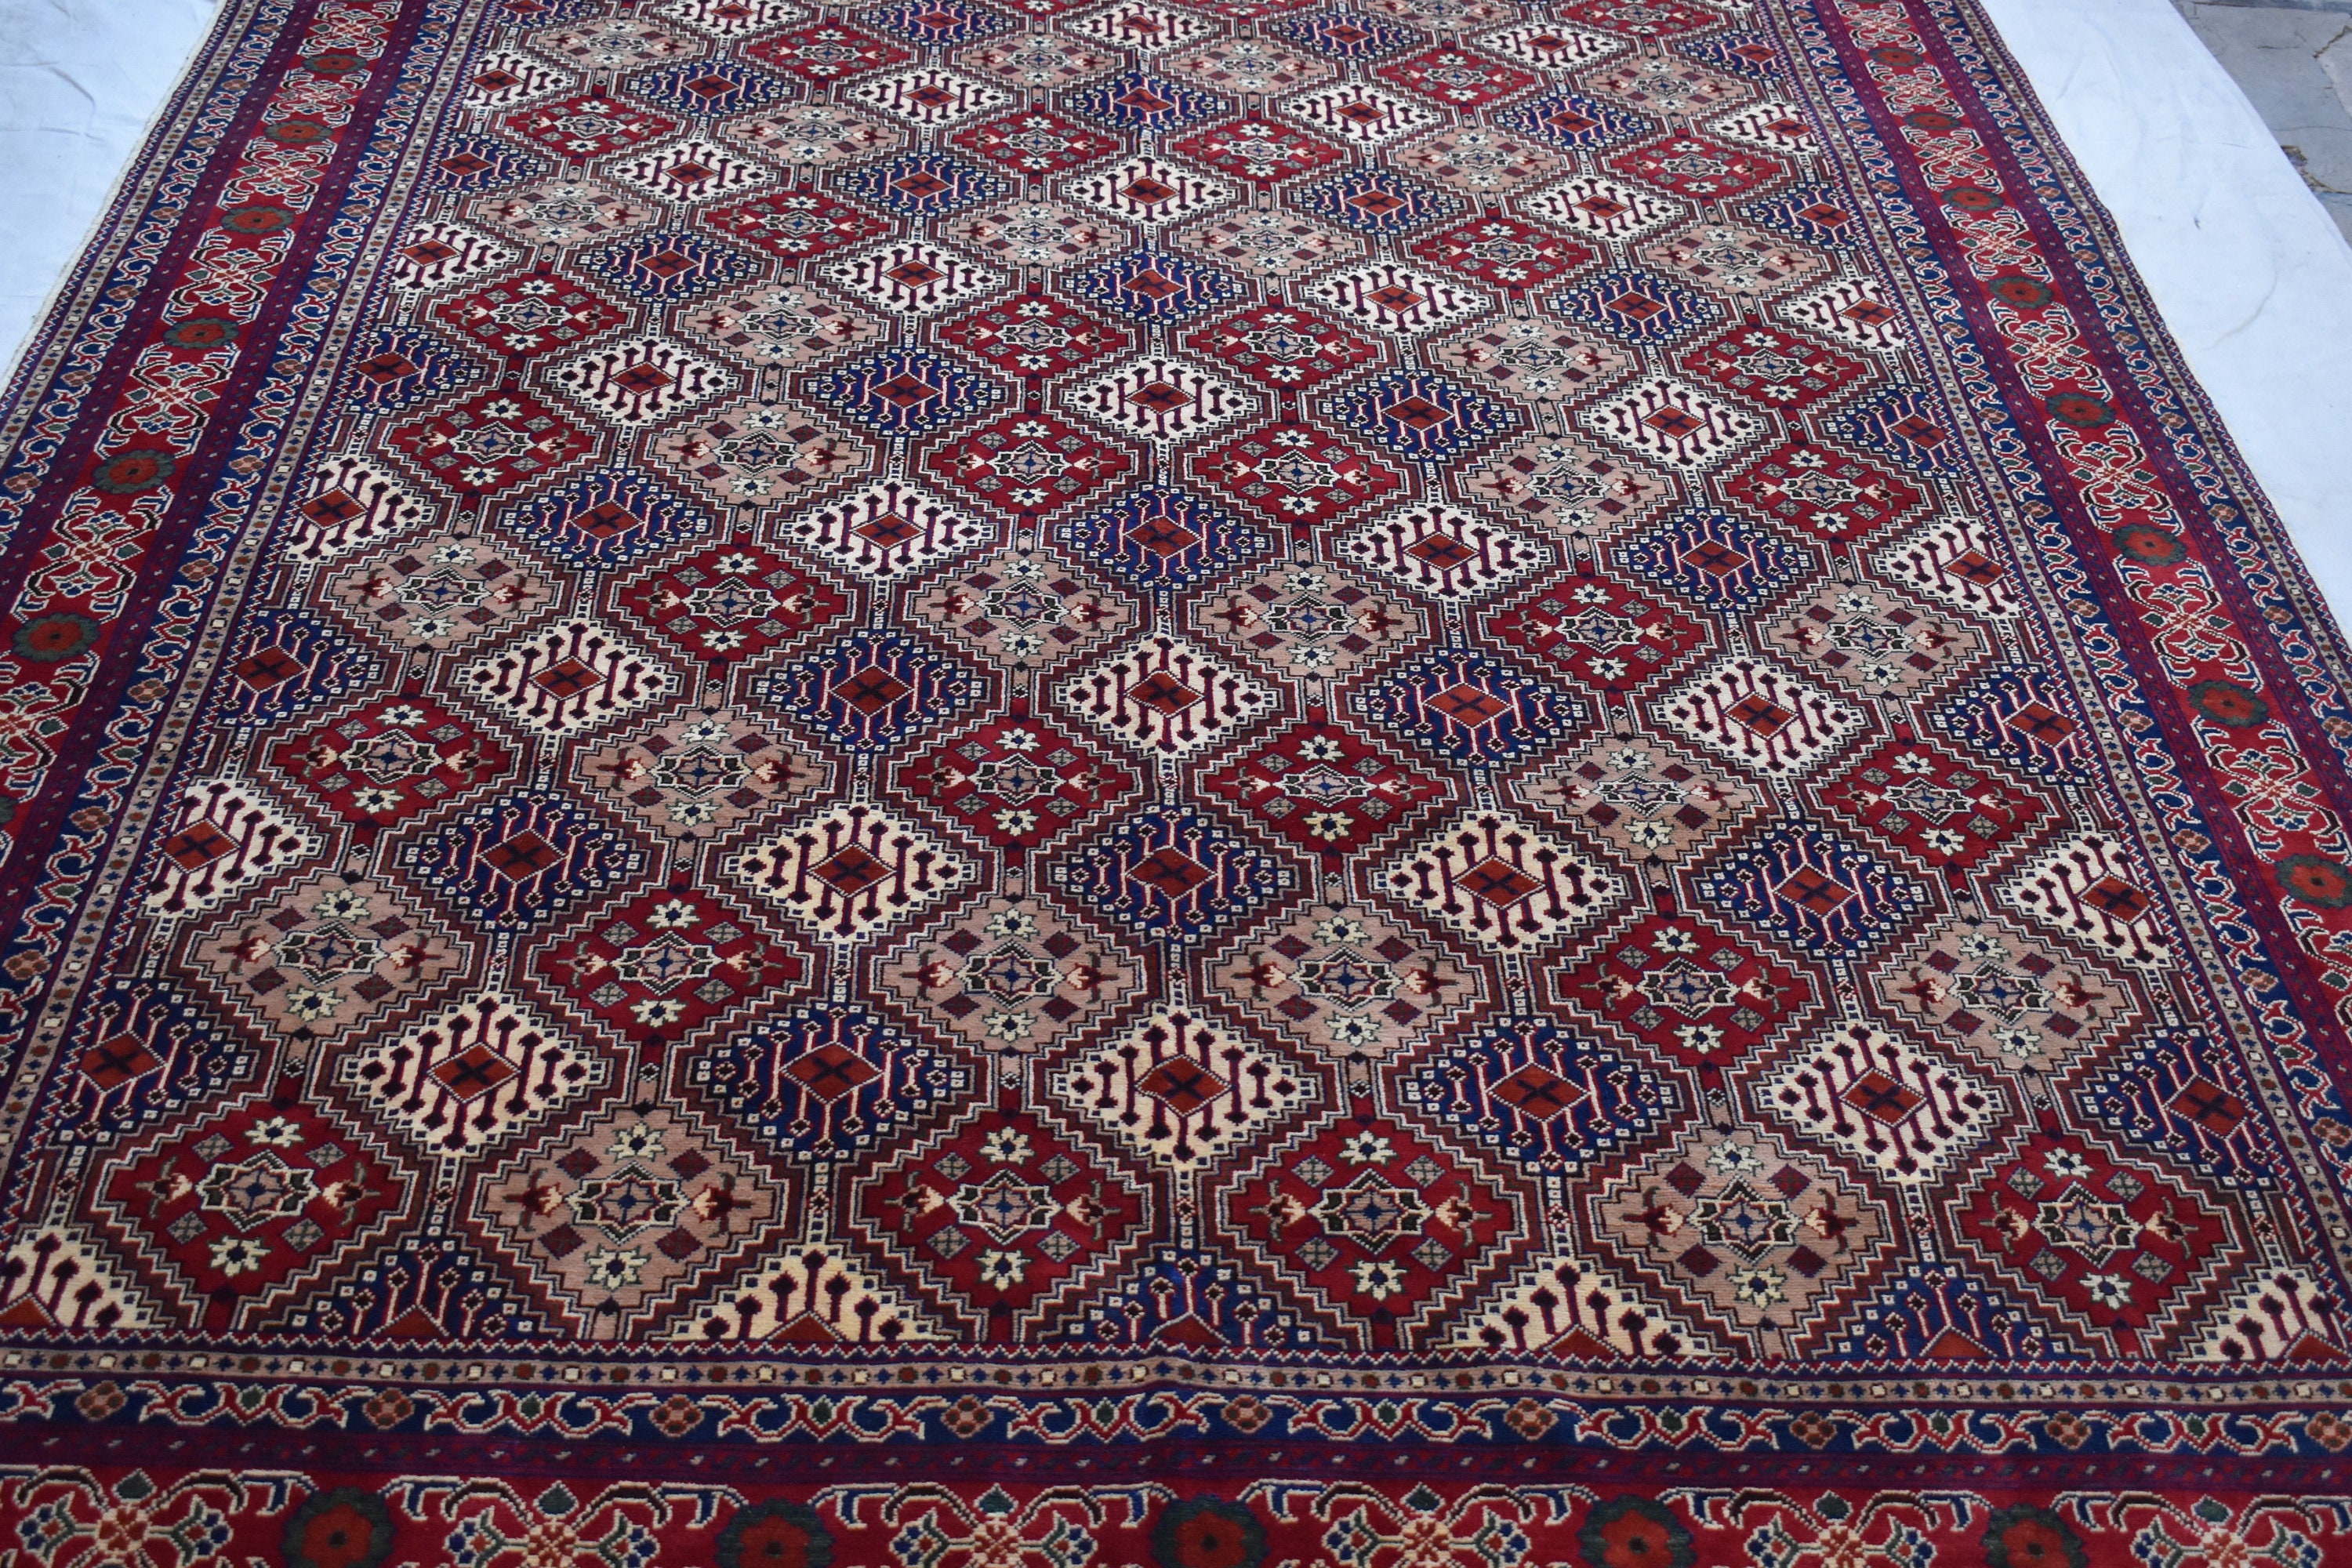 Teppich, Großer, Wohnzimmer, Teppich, Geschenke, Esstisch, handgefertigter orientalischer Wolle, Afghan für Teppich, Teppich marokkanischer Jubiläum, DG13 Teppich,